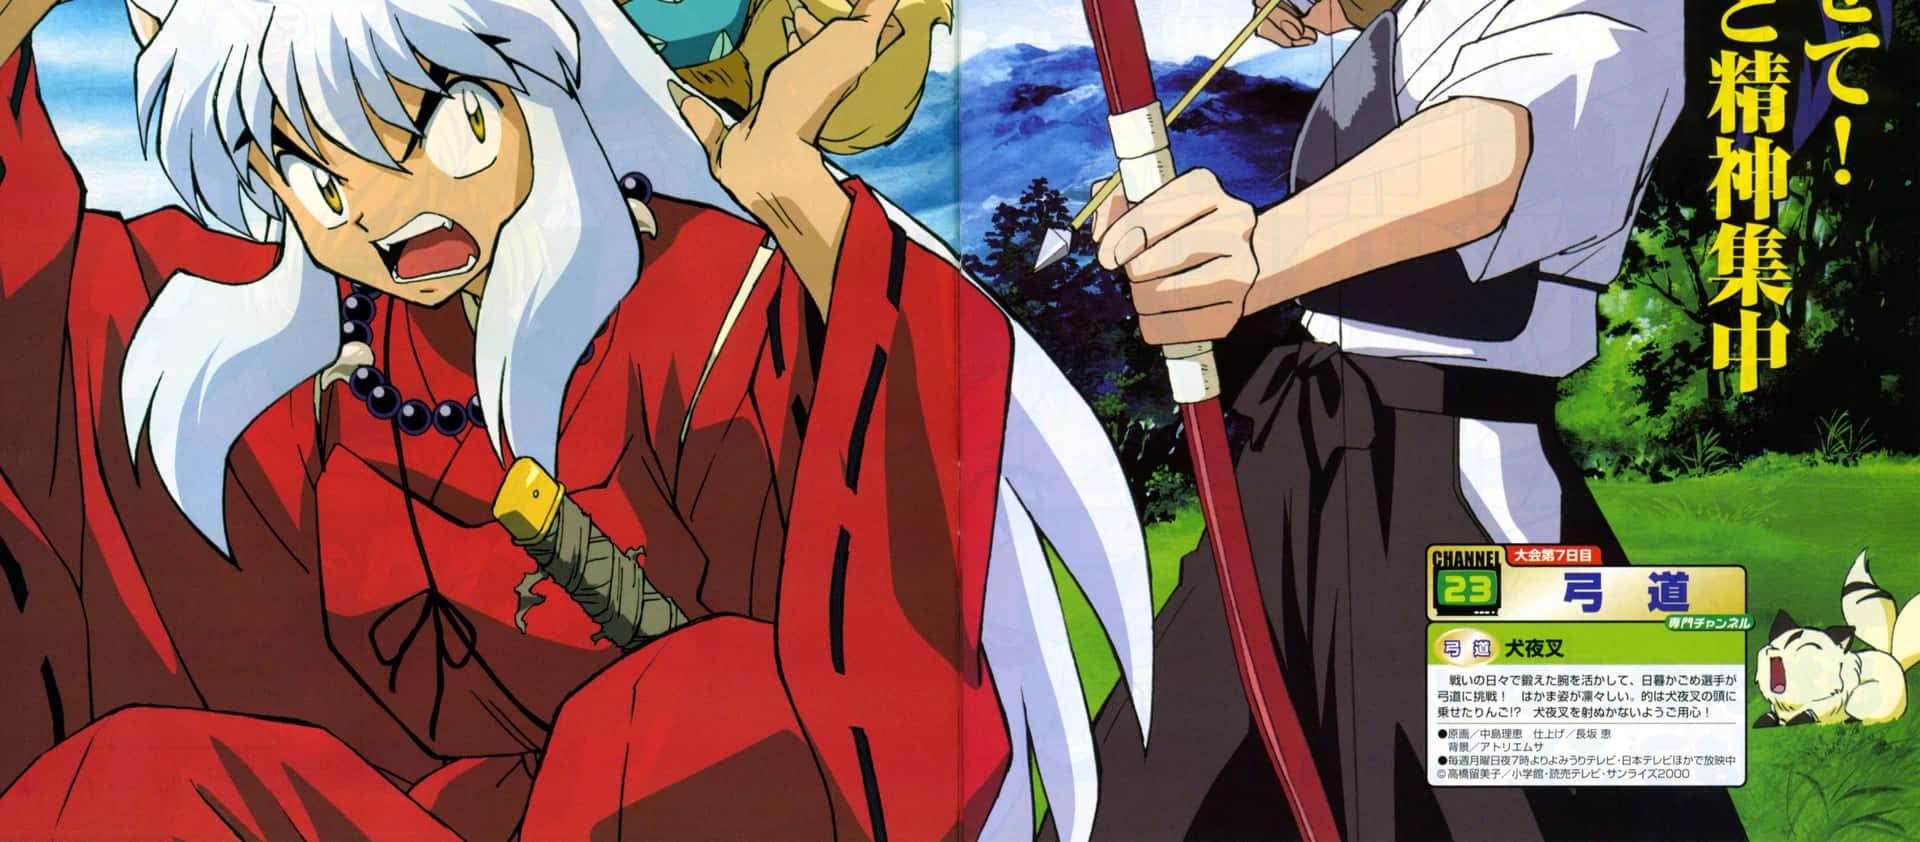 Inuyasha and Kirara in action Wallpaper